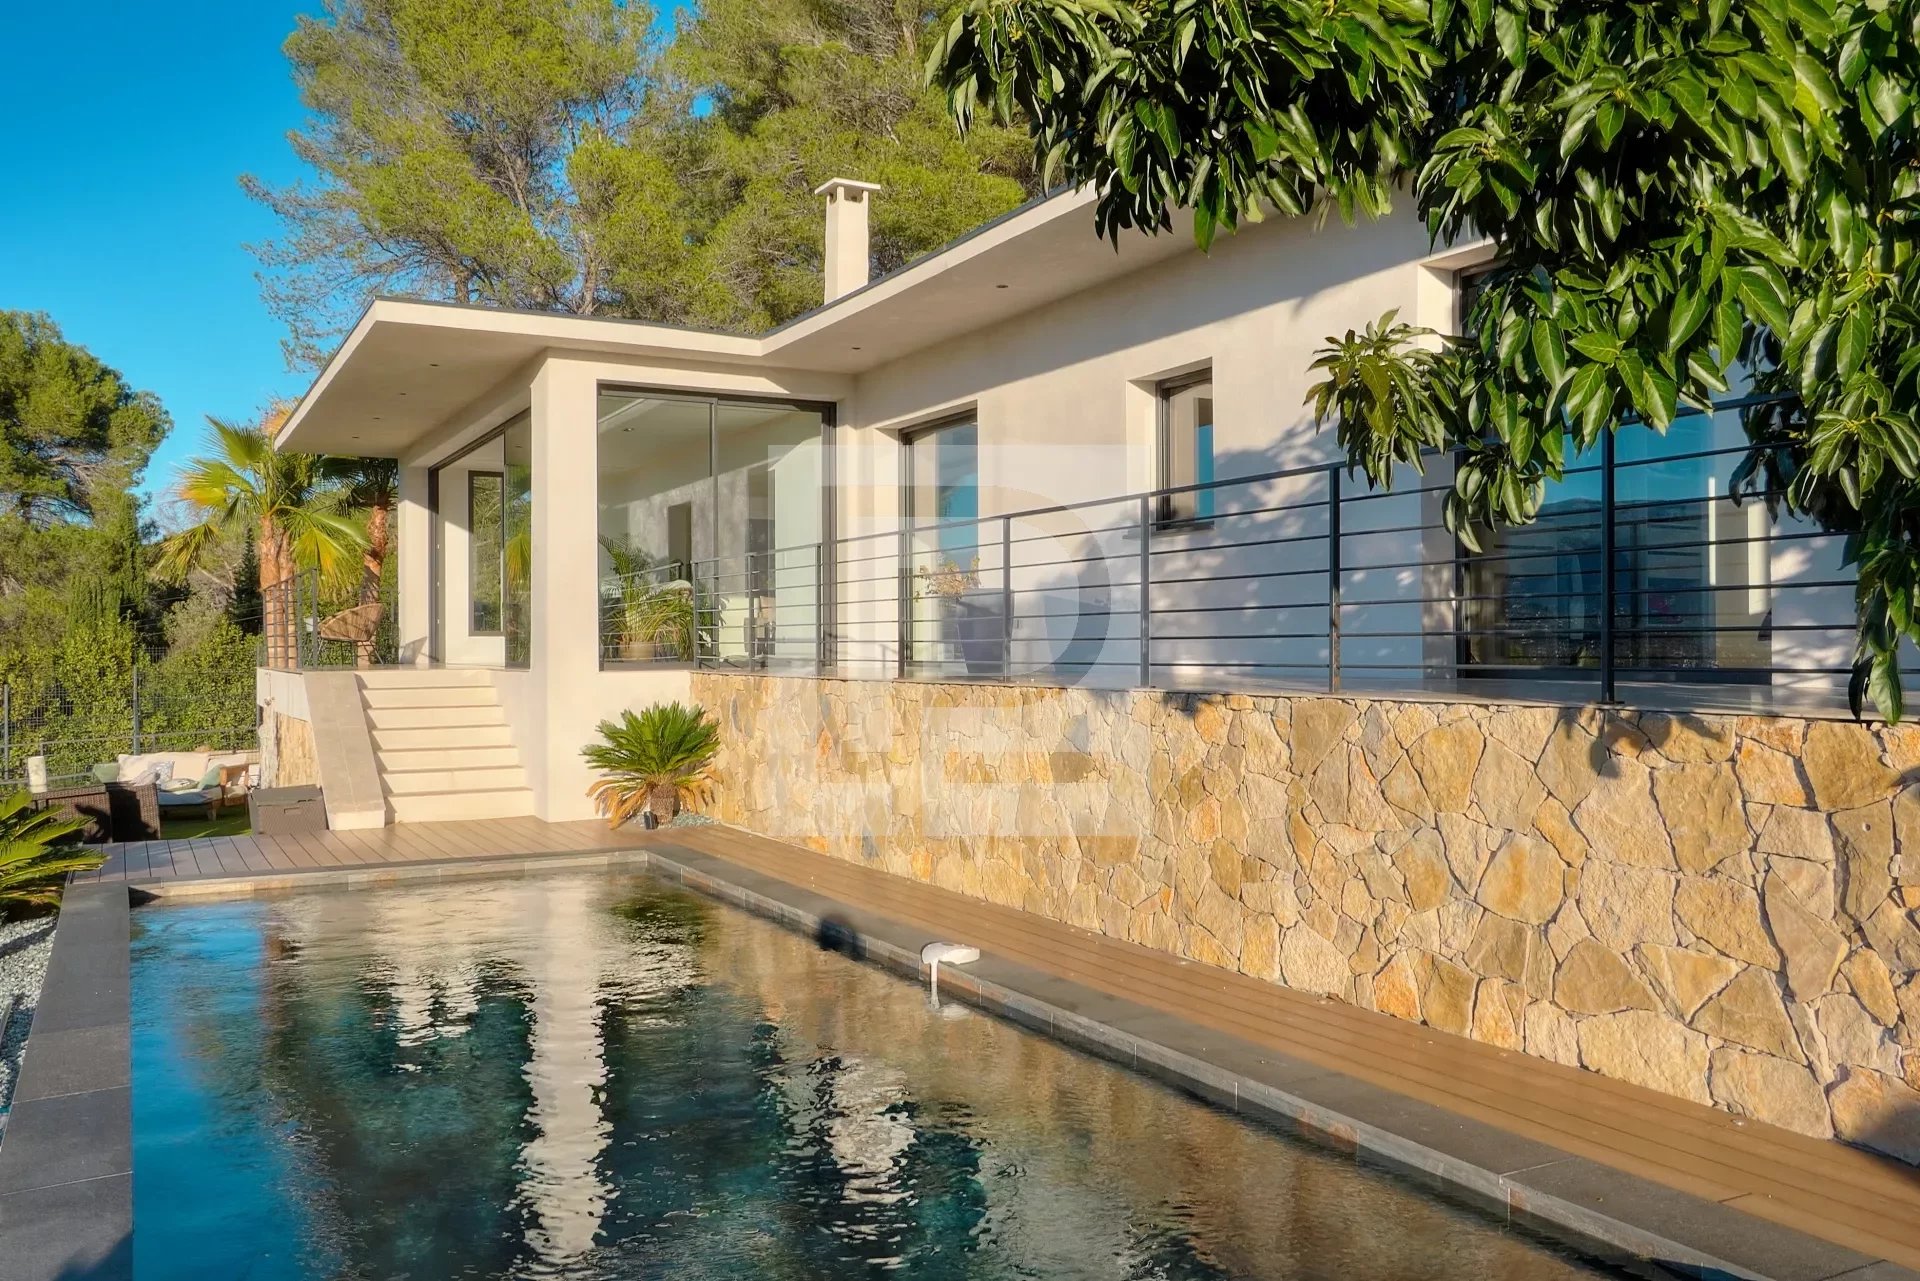 Confortable villa contemporaine au calme avec vue panoramique